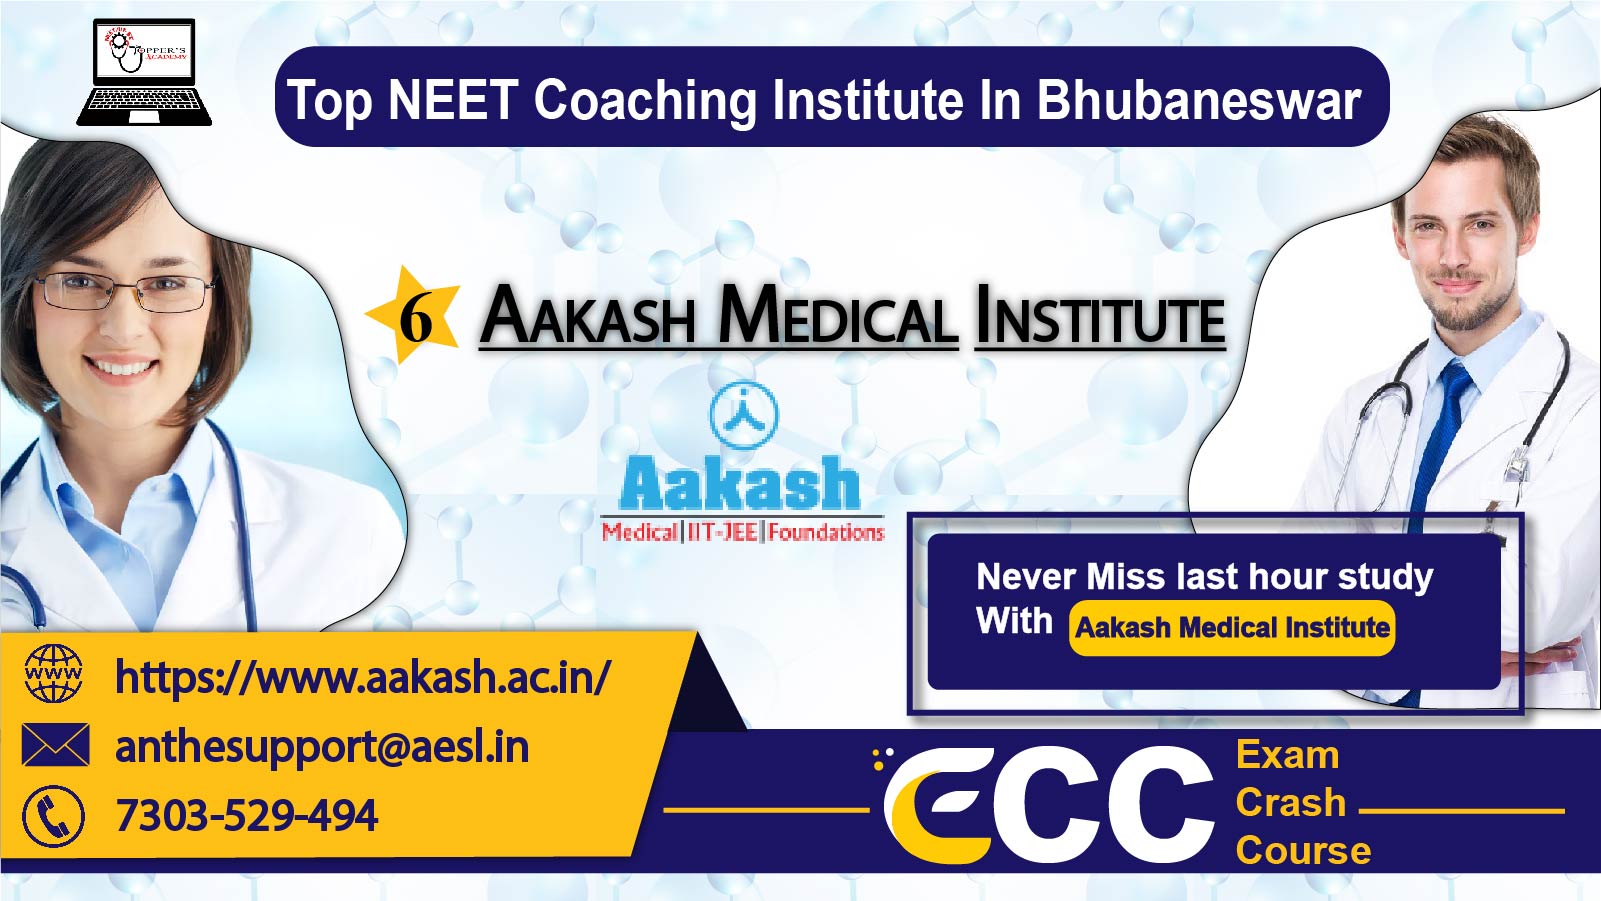 Aakash Institute NEET Academy in Bhubaneswar